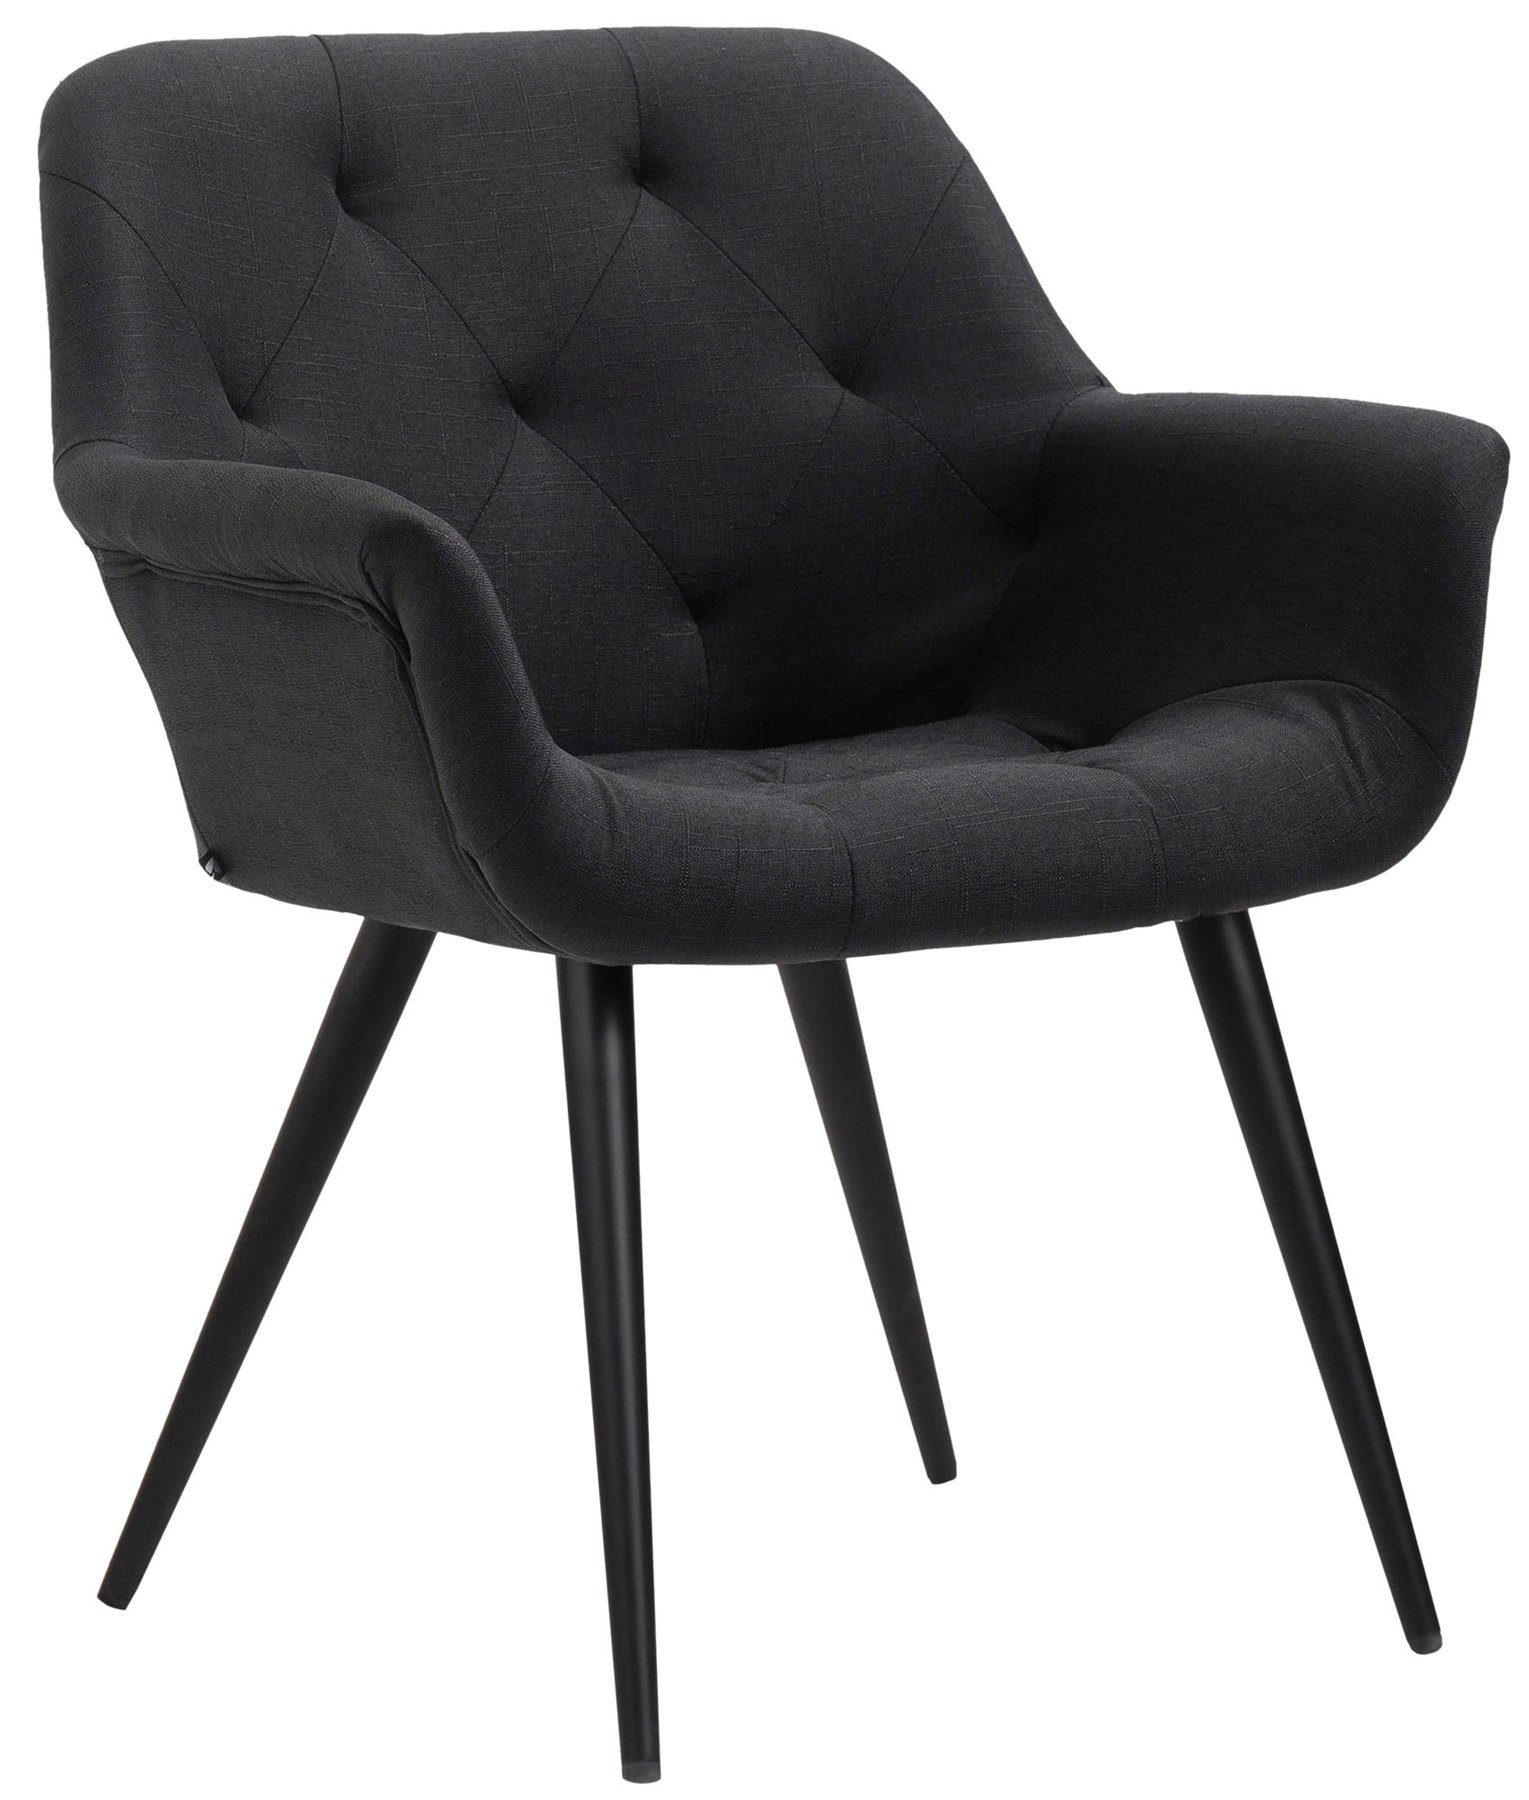 TPFLiving Esszimmerstuhl Lamfol mit - gepolsterter Esstischstuhl Sitzfläche - Gestell: Konferenzstuhl Sitzfläche: schwarz - hochwertig (Küchenstuhl Wohnzimmerstuhl), schwarz Stoff - Metall